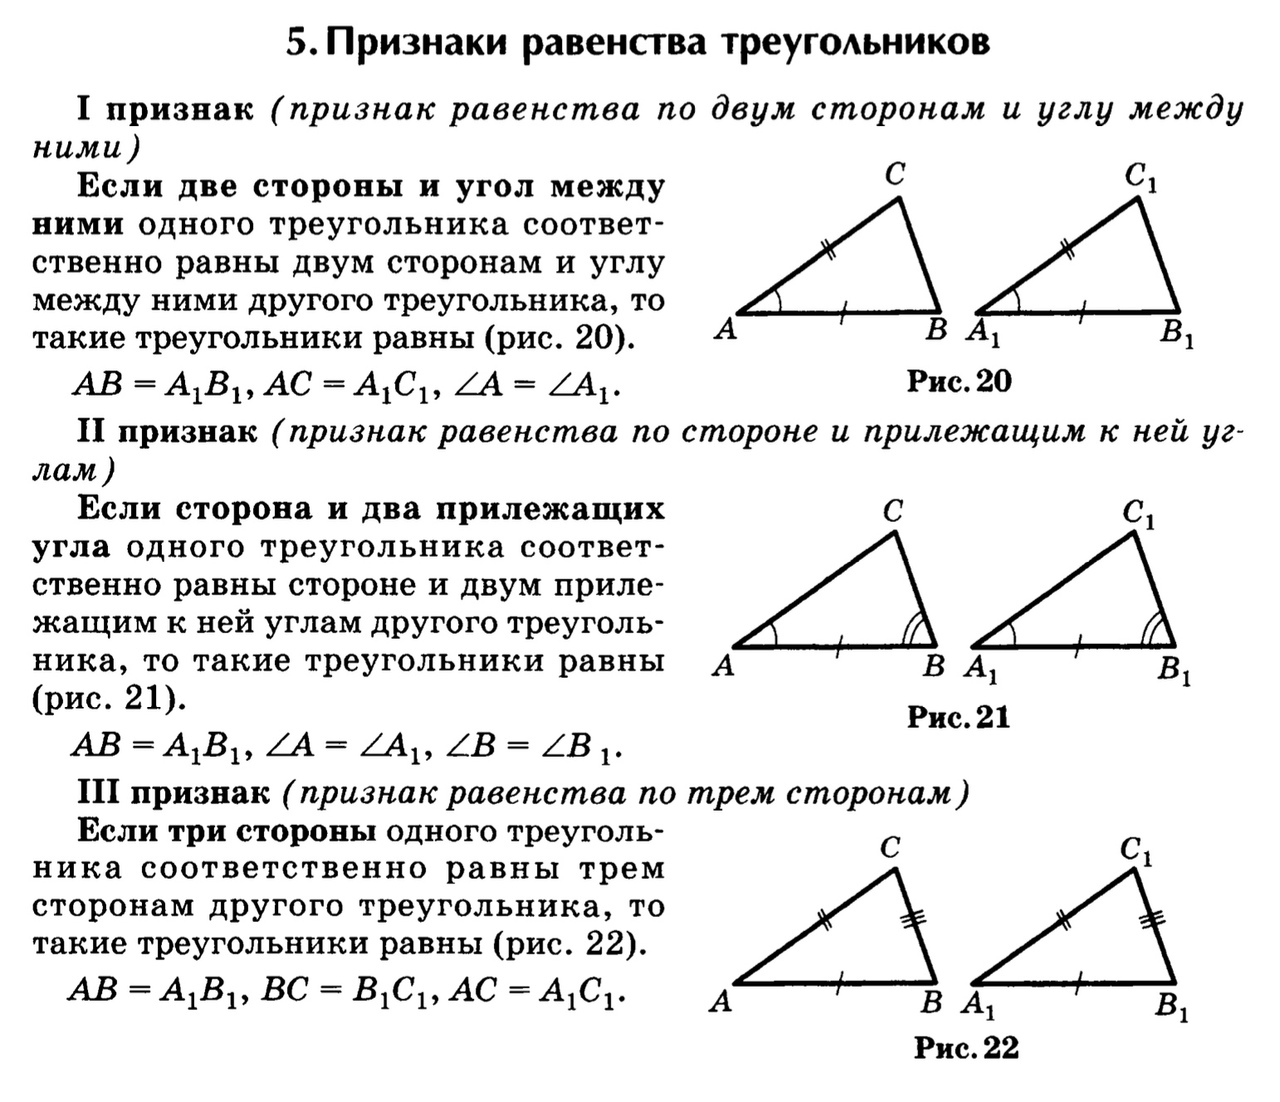 1 признак равенства прямых треугольников. 2 И 3 признак равенства треугольников. Геометрия три признака равенства треугольников. Первый второй и третий признак равенства треугольников 7 класс. Первый и второй признаки равенства треугольников.